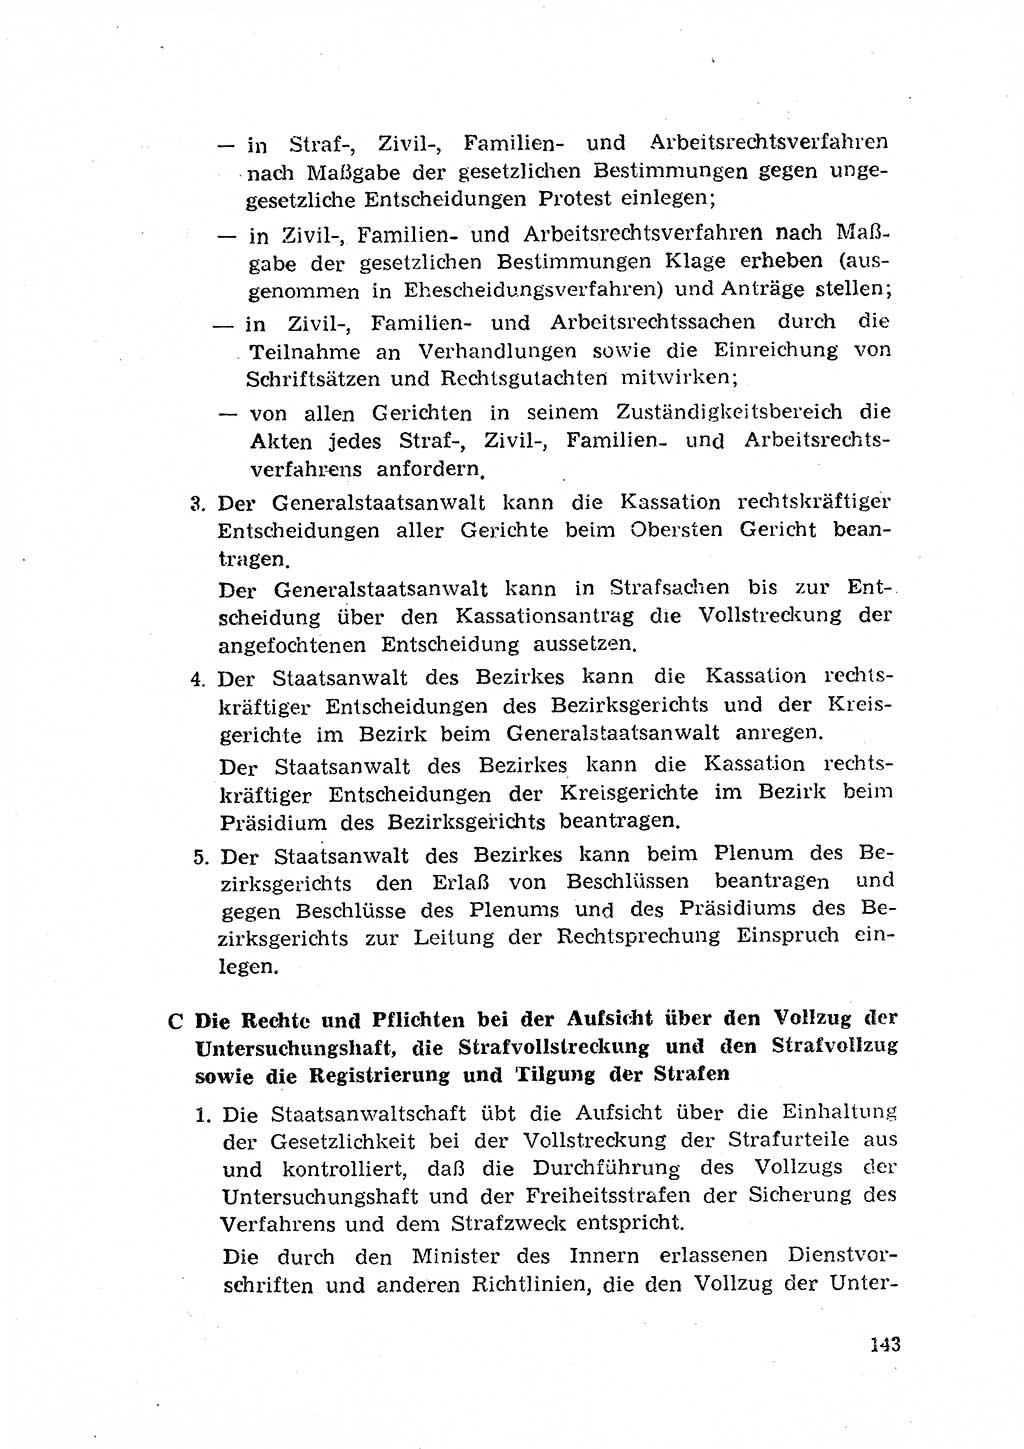 Rechtspflegeerlaß [Deutsche Demokratische Republik (DDR)] 1963, Seite 143 (R.-Pfl.-Erl. DDR 1963, S. 143)